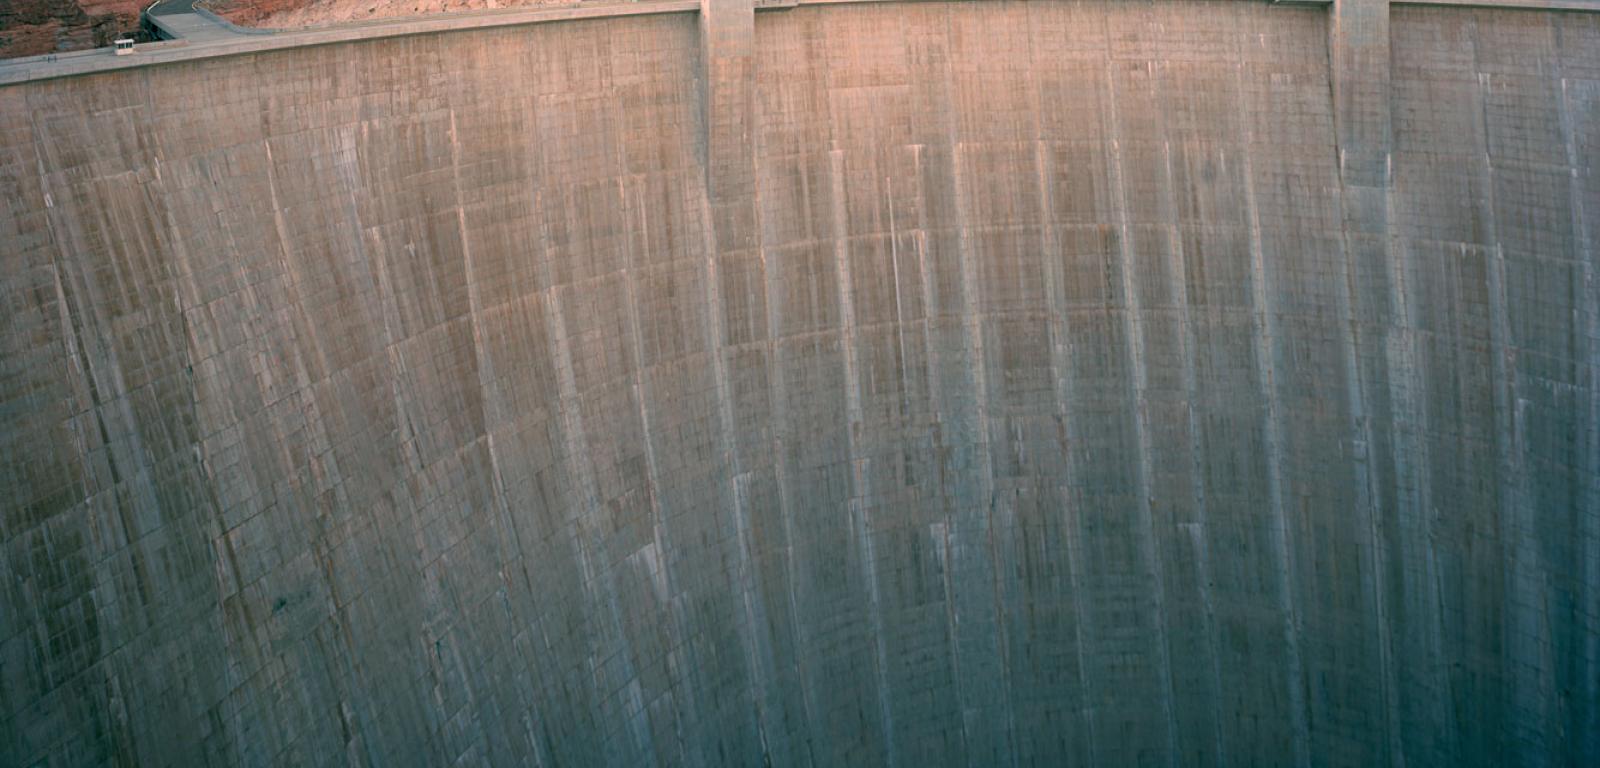 Zapora Glen Canyon Dam w Arizonie produkuje energię elektryczną, wykorzystując wodę zgromadzoną w Zbiorniku Powella, drugim pod względem rozmiarów sztucznym jeziorze w USA.